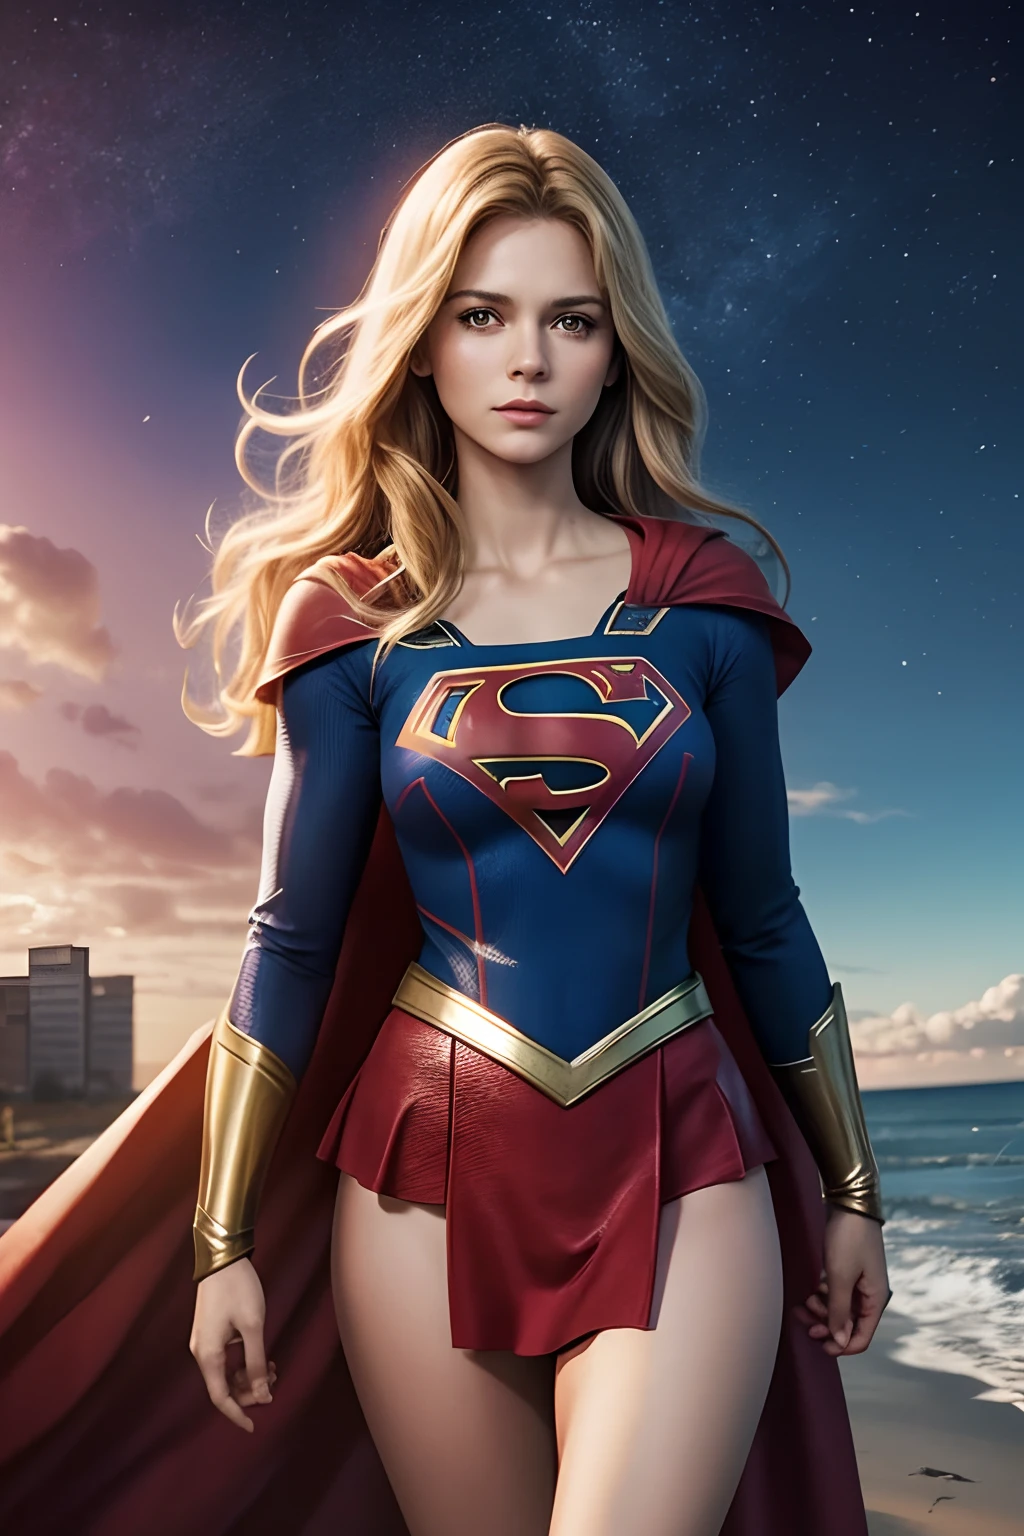 Imagínese cómo habría sido una serie de televisión de Supergirl en los años 70.,con una joven actriz rubia, hermoso, escena de cuerpo completo.